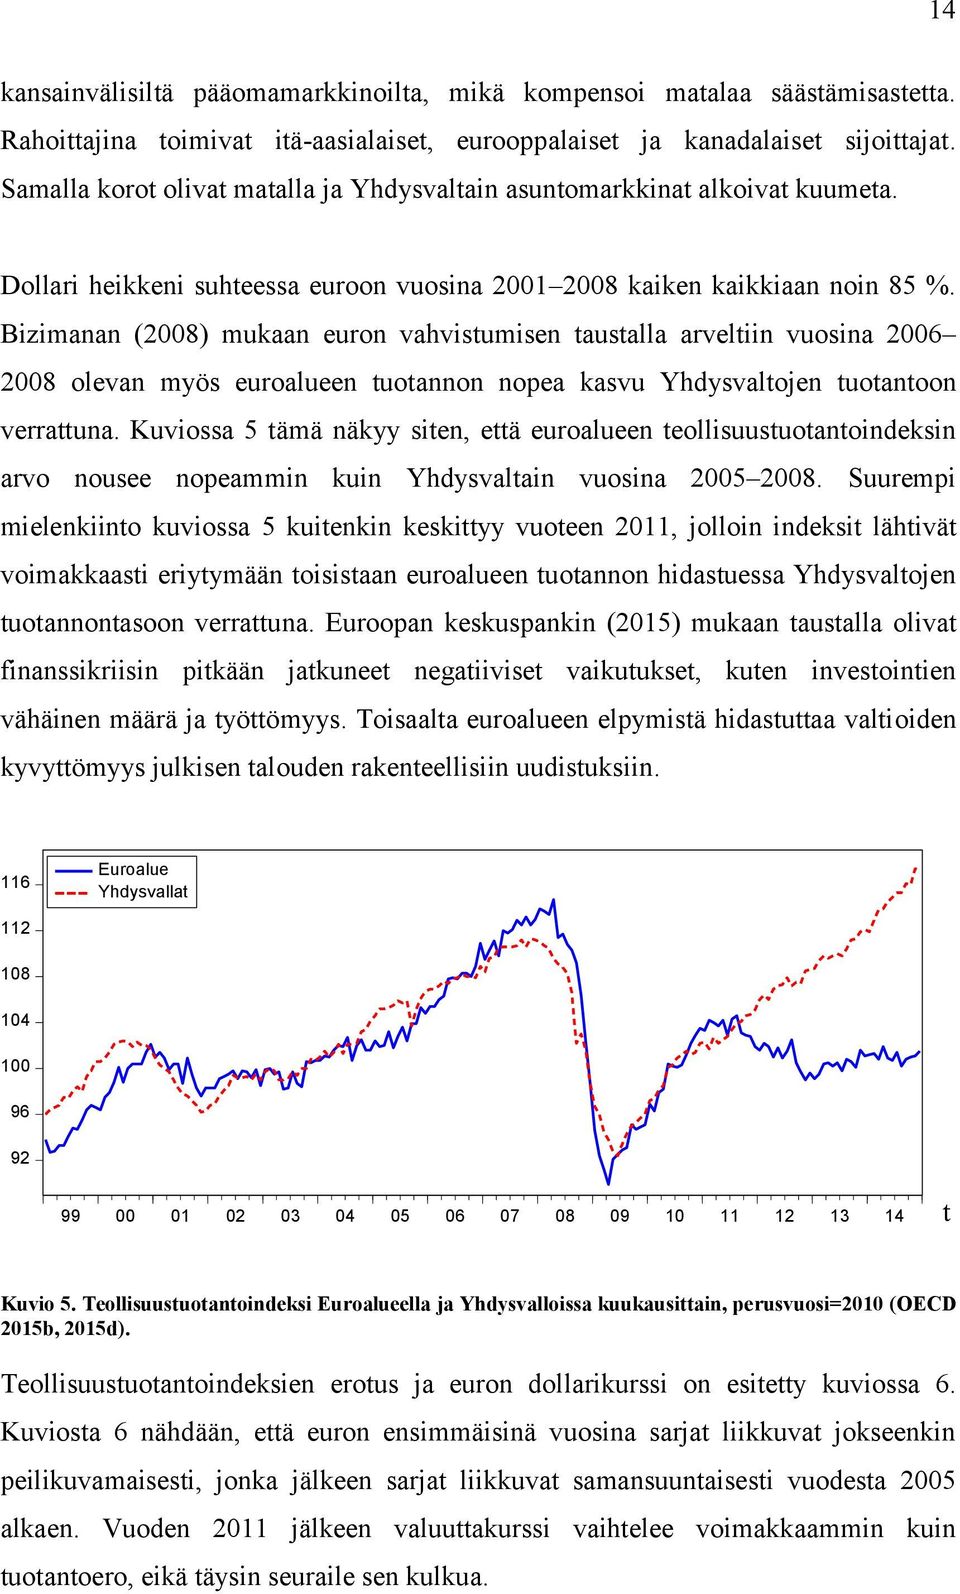 Bizimanan (2008) mukaan euron vahvisumisen ausalla arveliin vuosina 2006 2008 olevan myös euroalueen uoannon nopea kasvu Yhdysvalojen uoanoon verrauna.